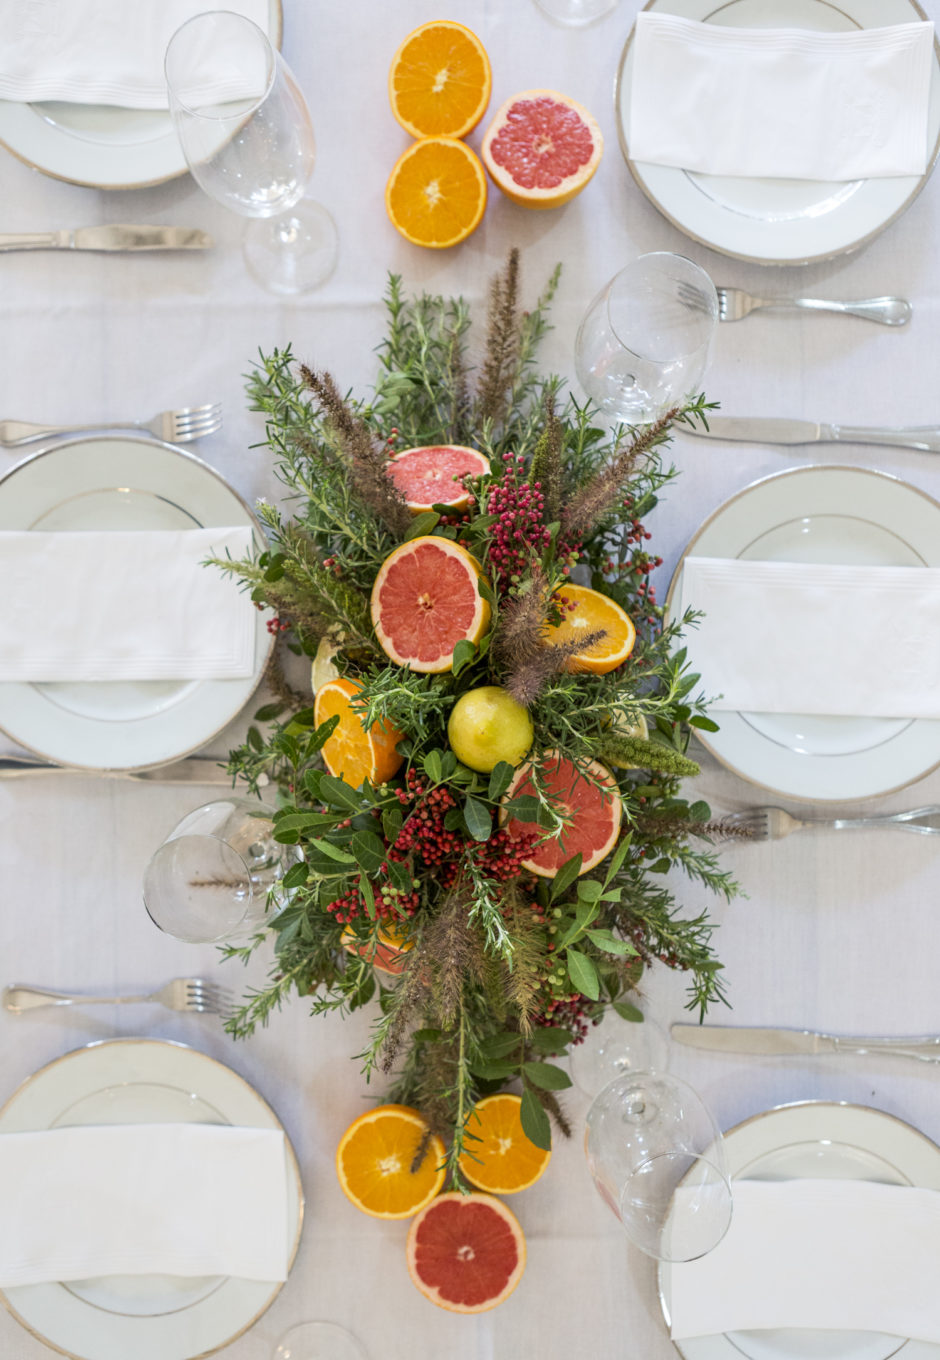 mesa posta com flores e frutas para servir churrasco de forma elegante 